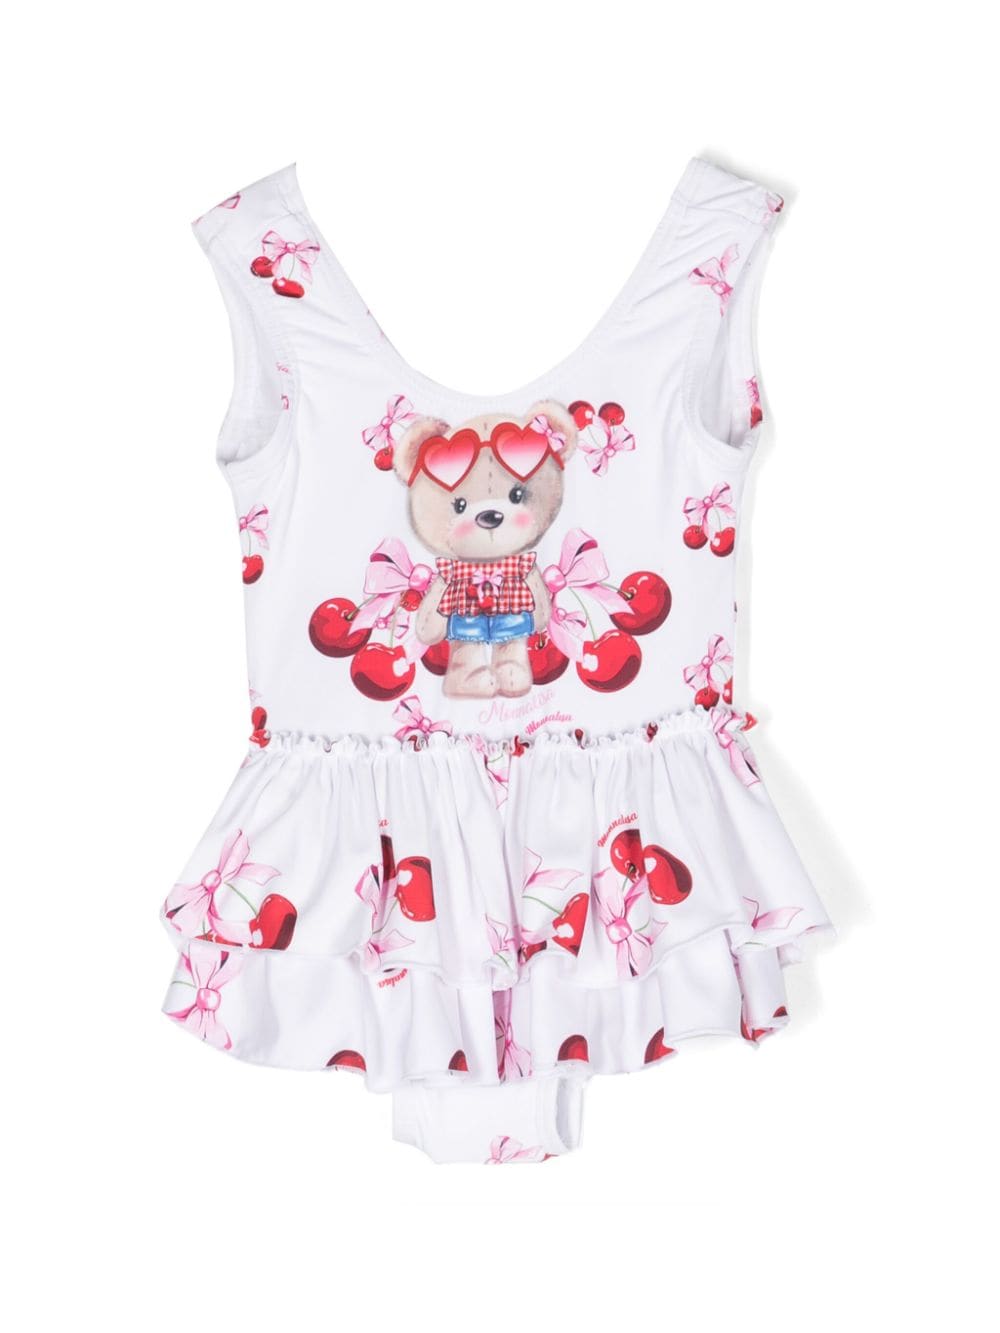 Teddy Cherry white baby girl costume